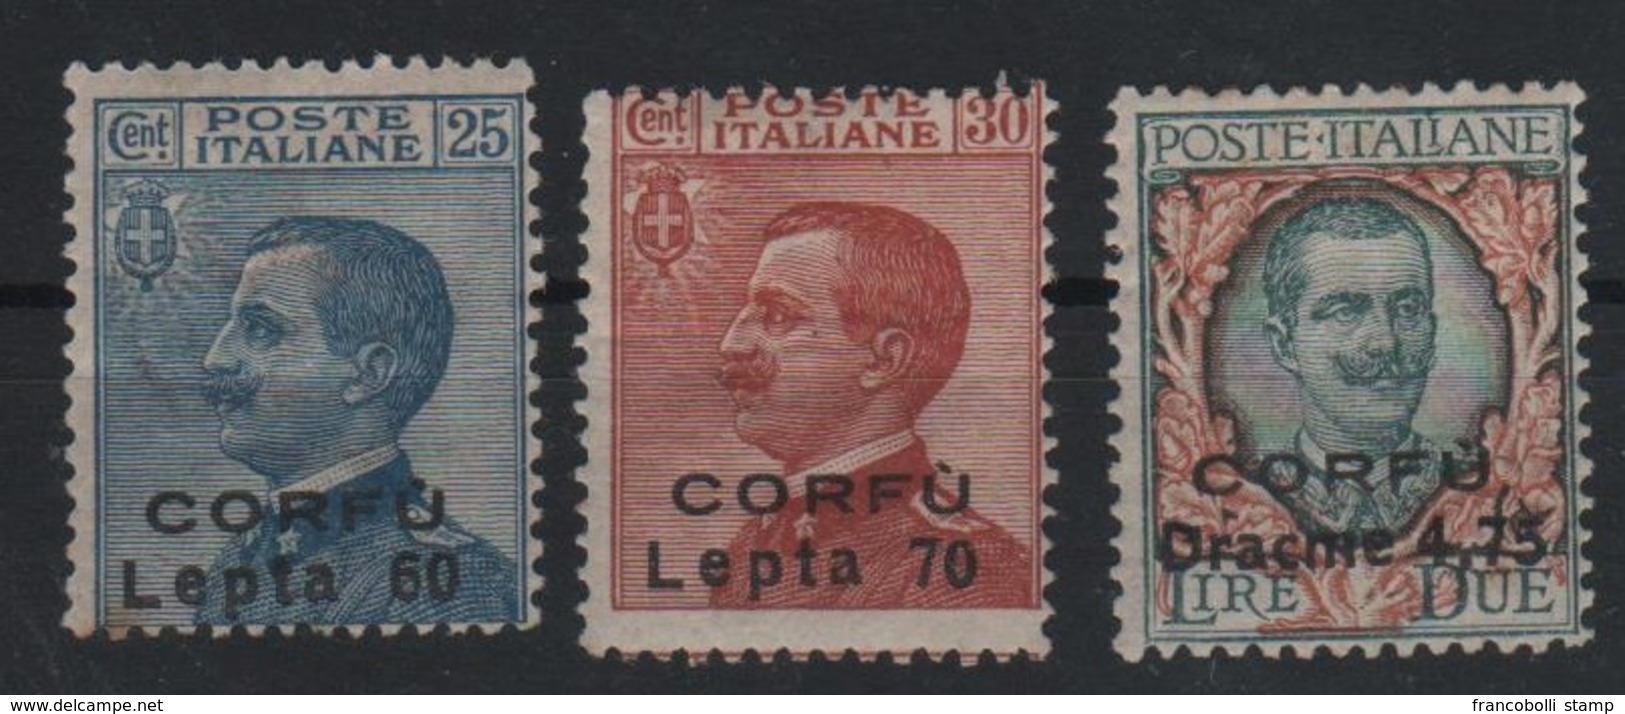 1923 Occupazione Corfù Francobolli D'Italia Sopr. CORFU Serie Cpl MLH Non Emessi - Corfu